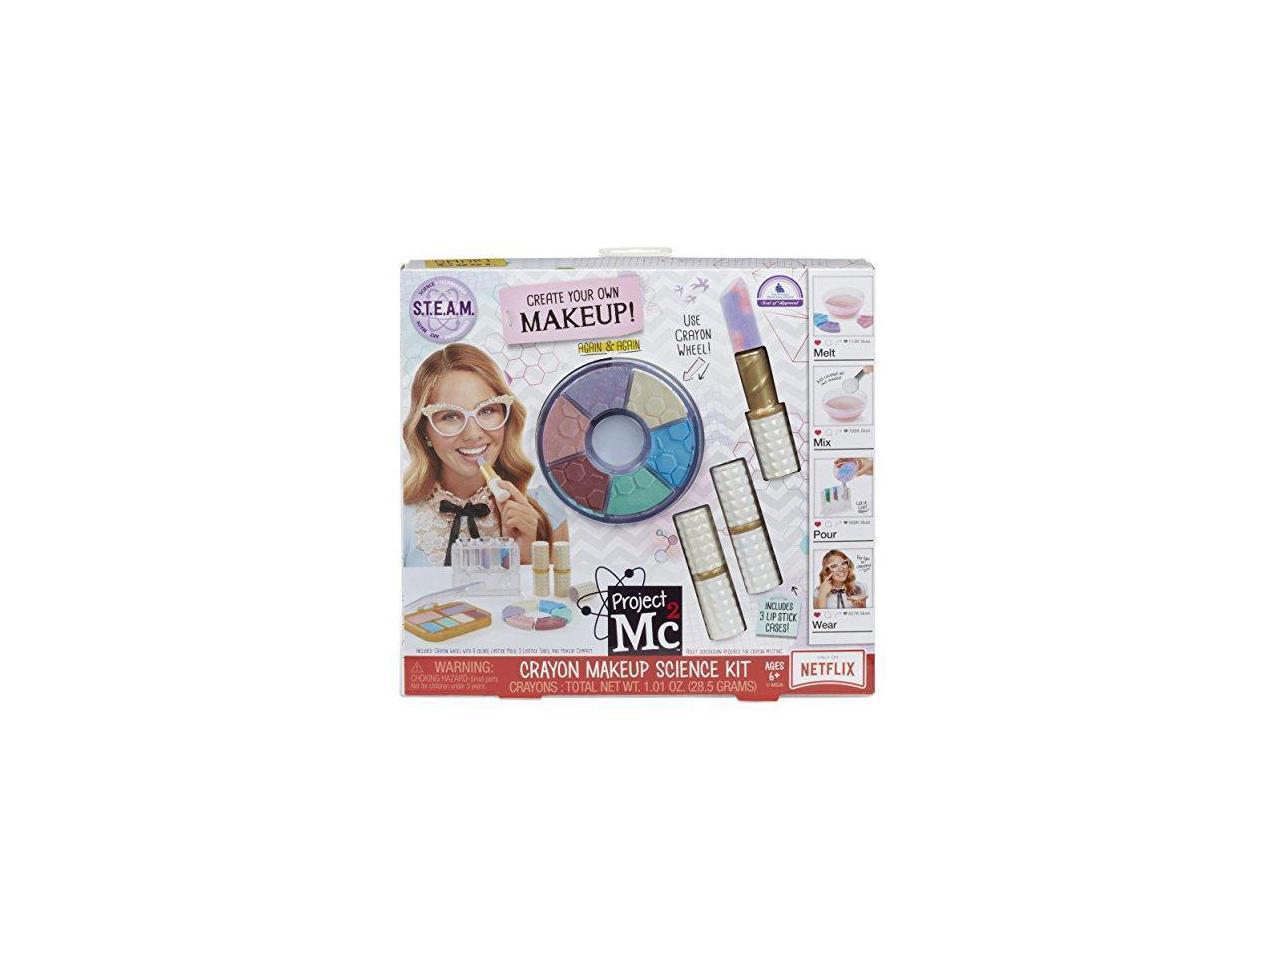 project mc2 crayon makeup science kit toy